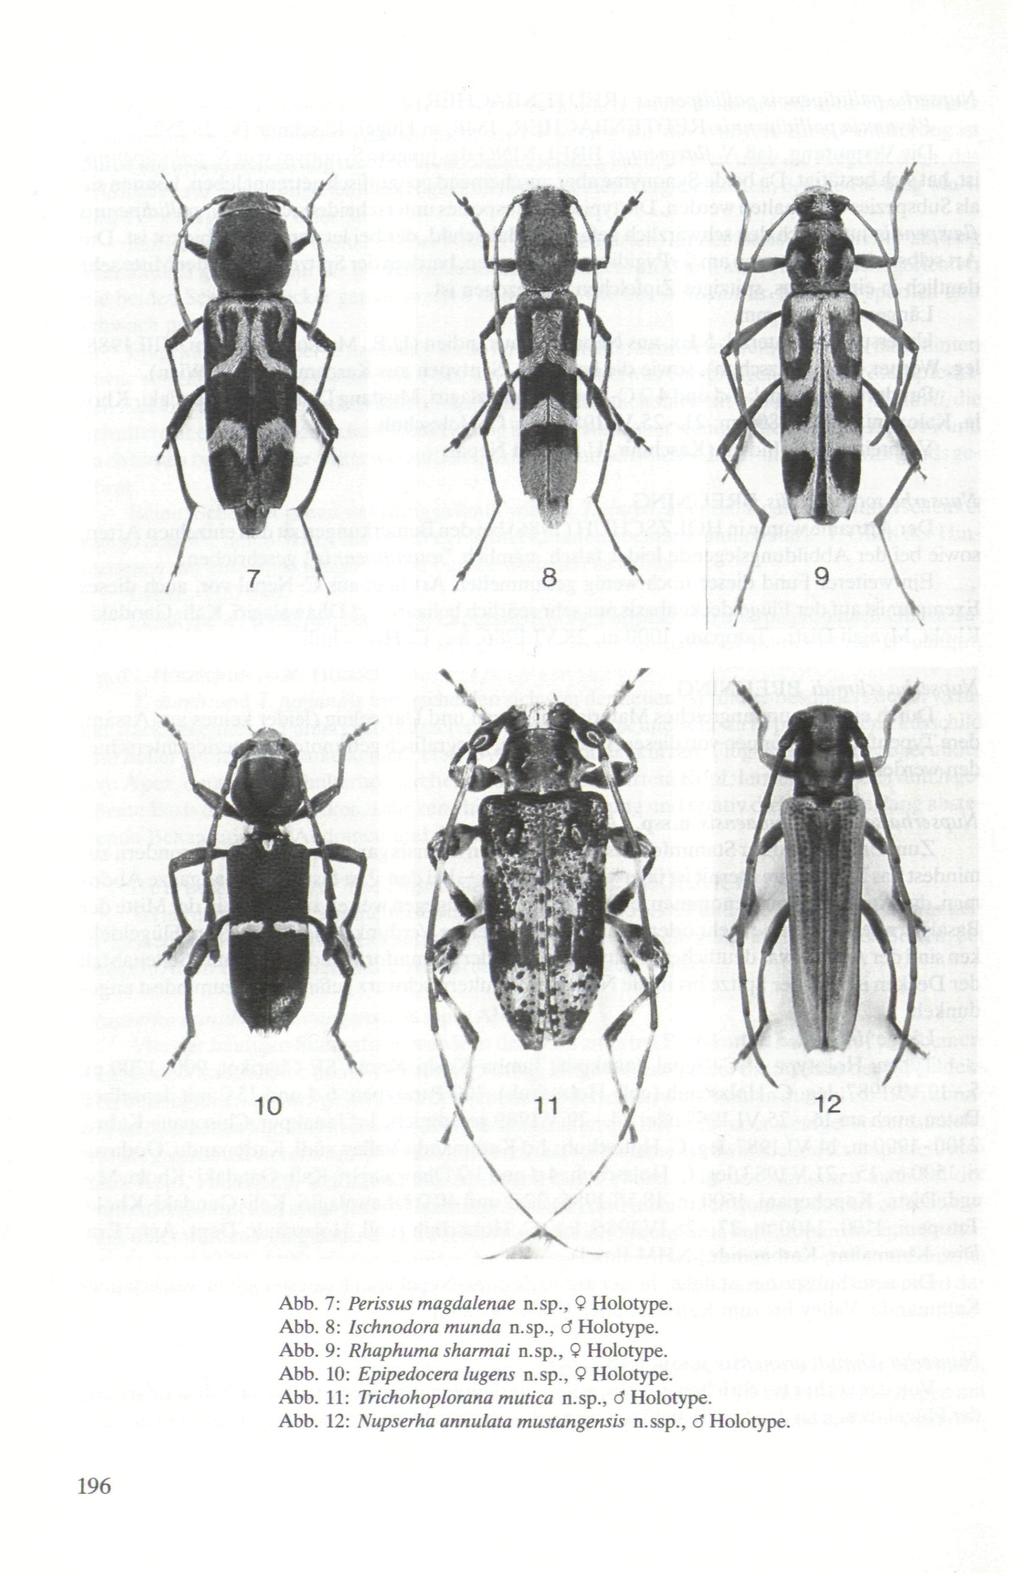 10 Abb. 7: Perissus magdalenae n.sp., 9 Holotype. Abb. 8: Ischnodora munda n.sp., d Holotype. Abb. 9: Rhaphuma sharmai n.sp., 9 Holotype. Abb. 10: Epipedocera lugens n.